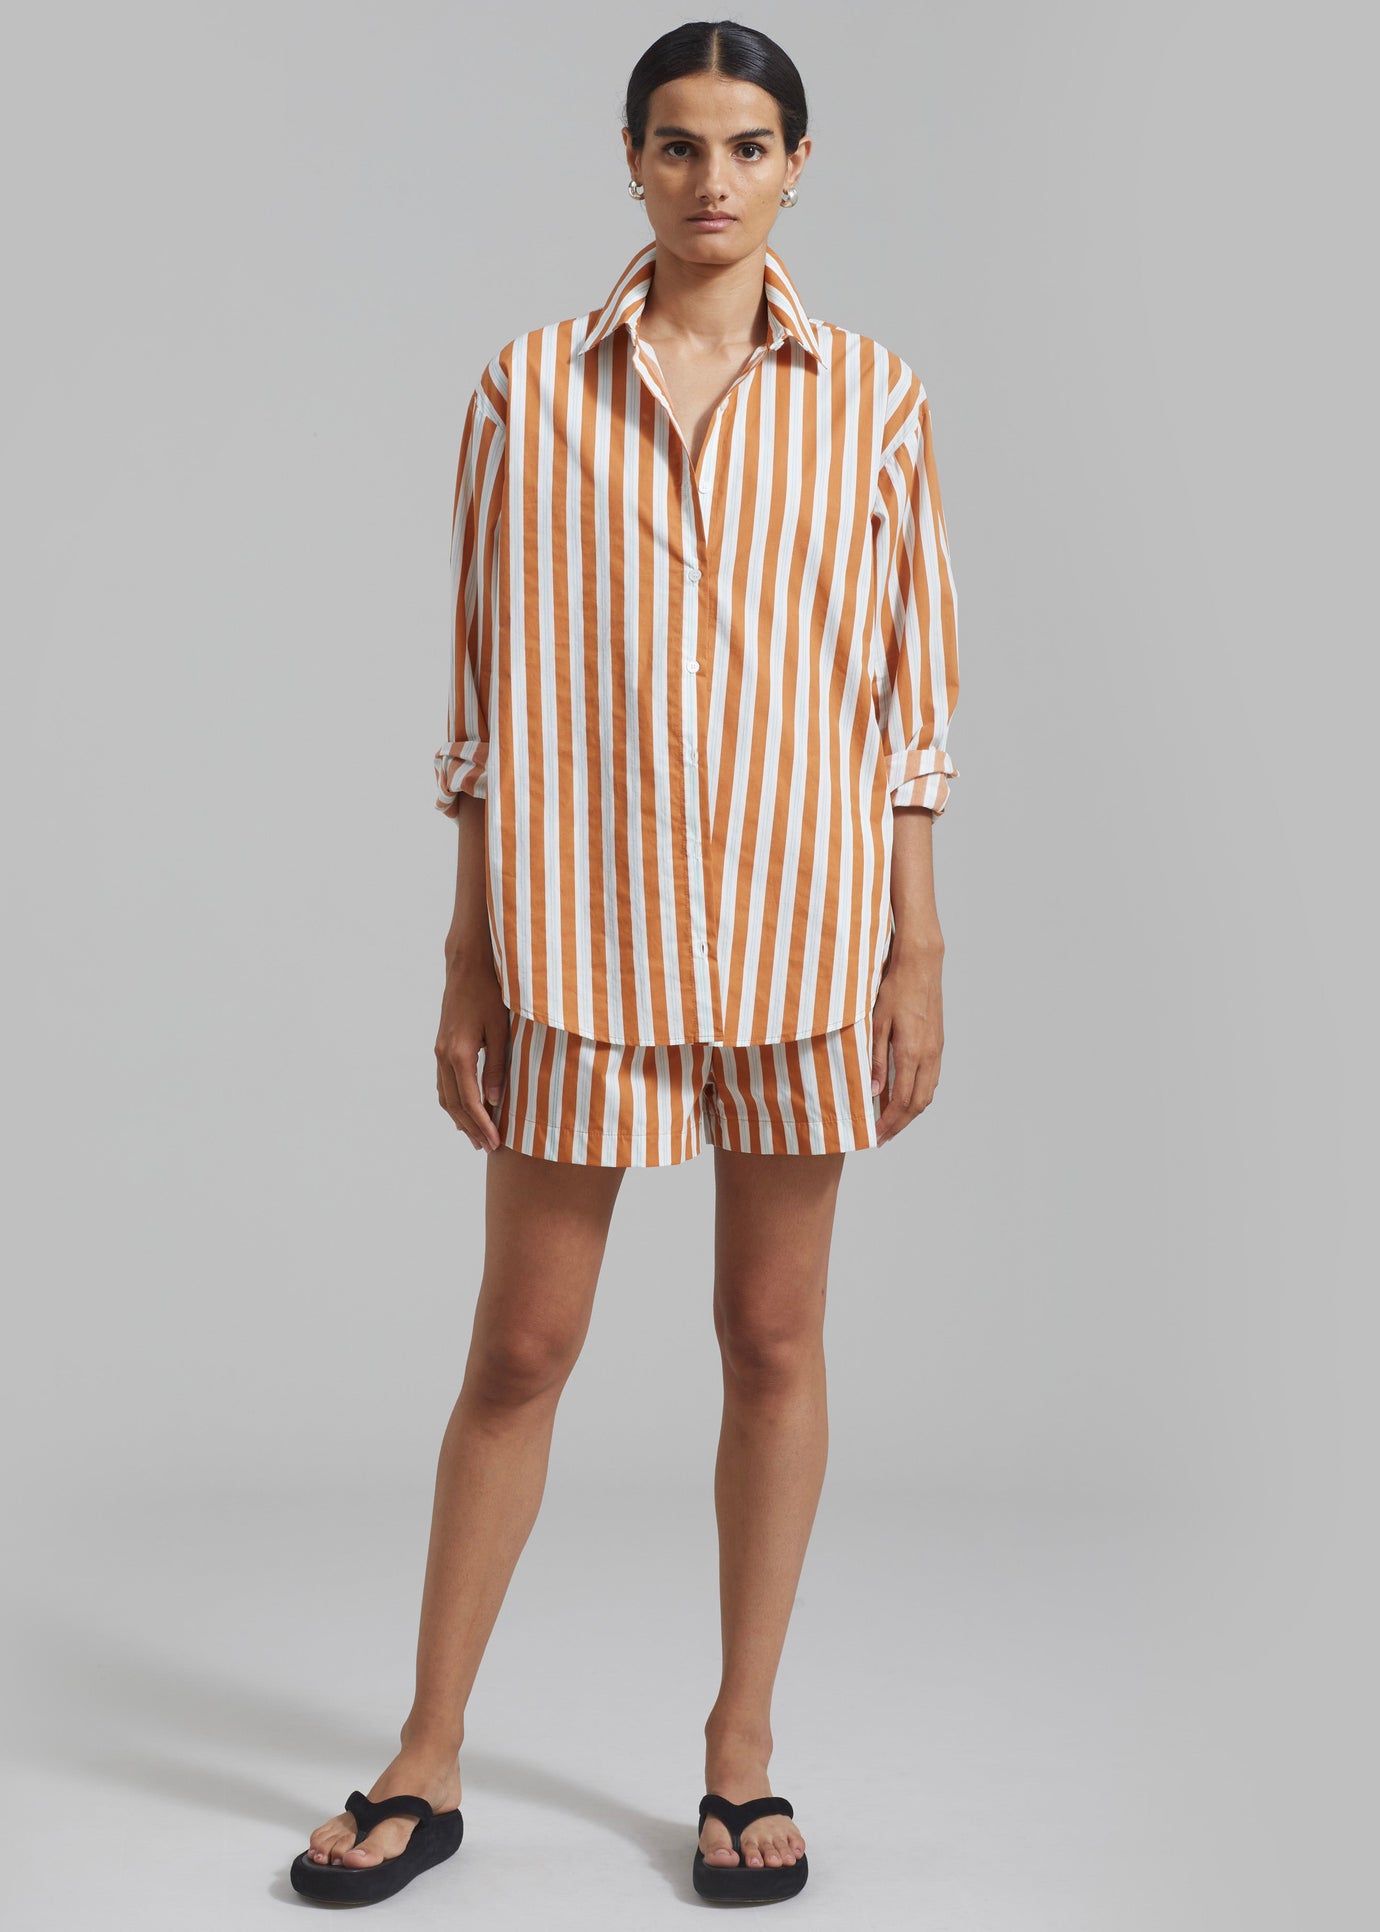 Juno Cotton Shirt - Orange Stripe - 1